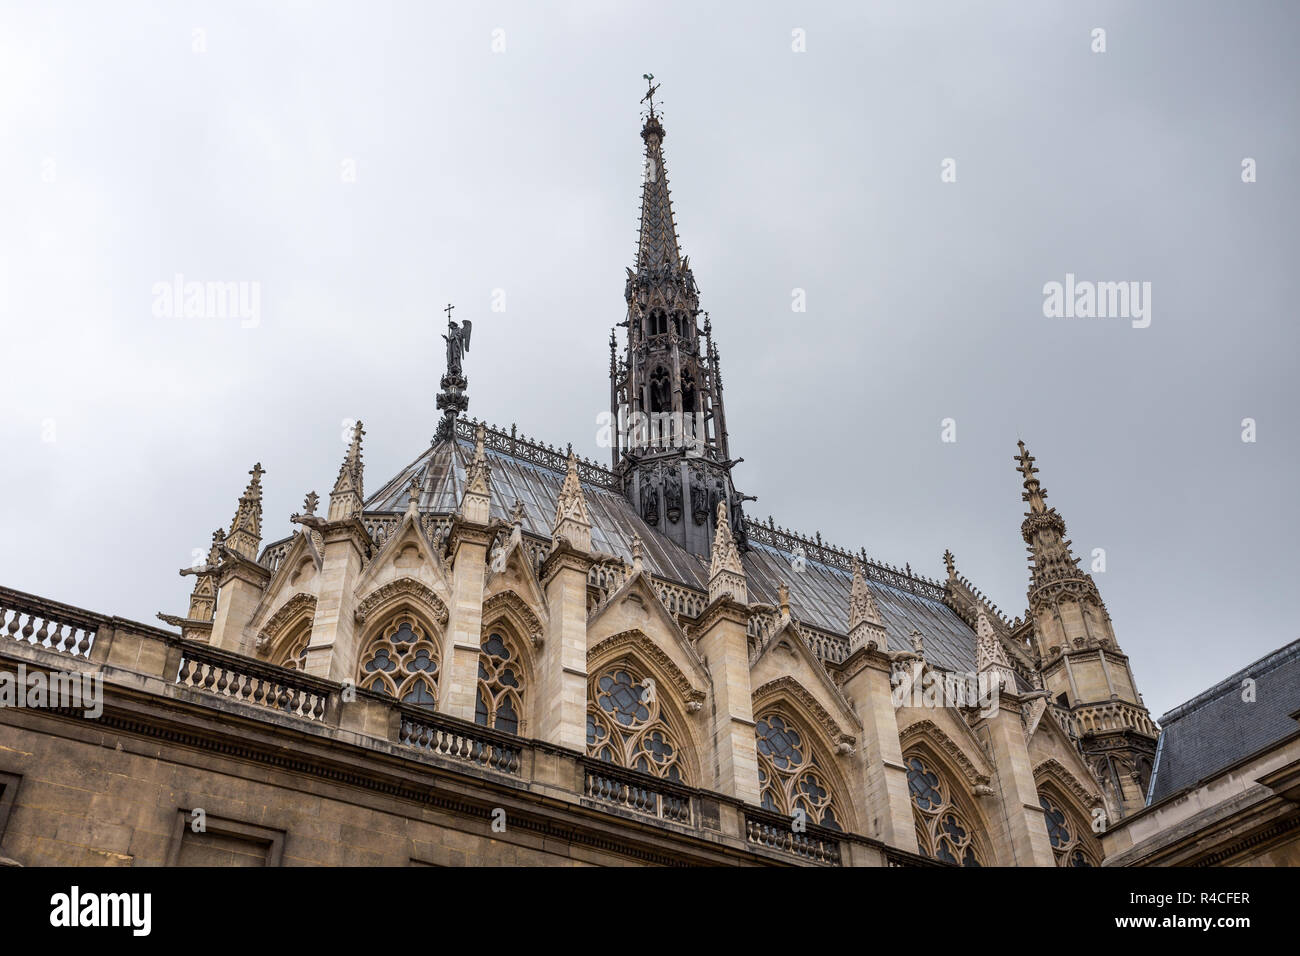 PARIS, FRANCE, SEPTEMBER 6, 2018 - The Sainte Chapelle in Paris, France Stock Photo